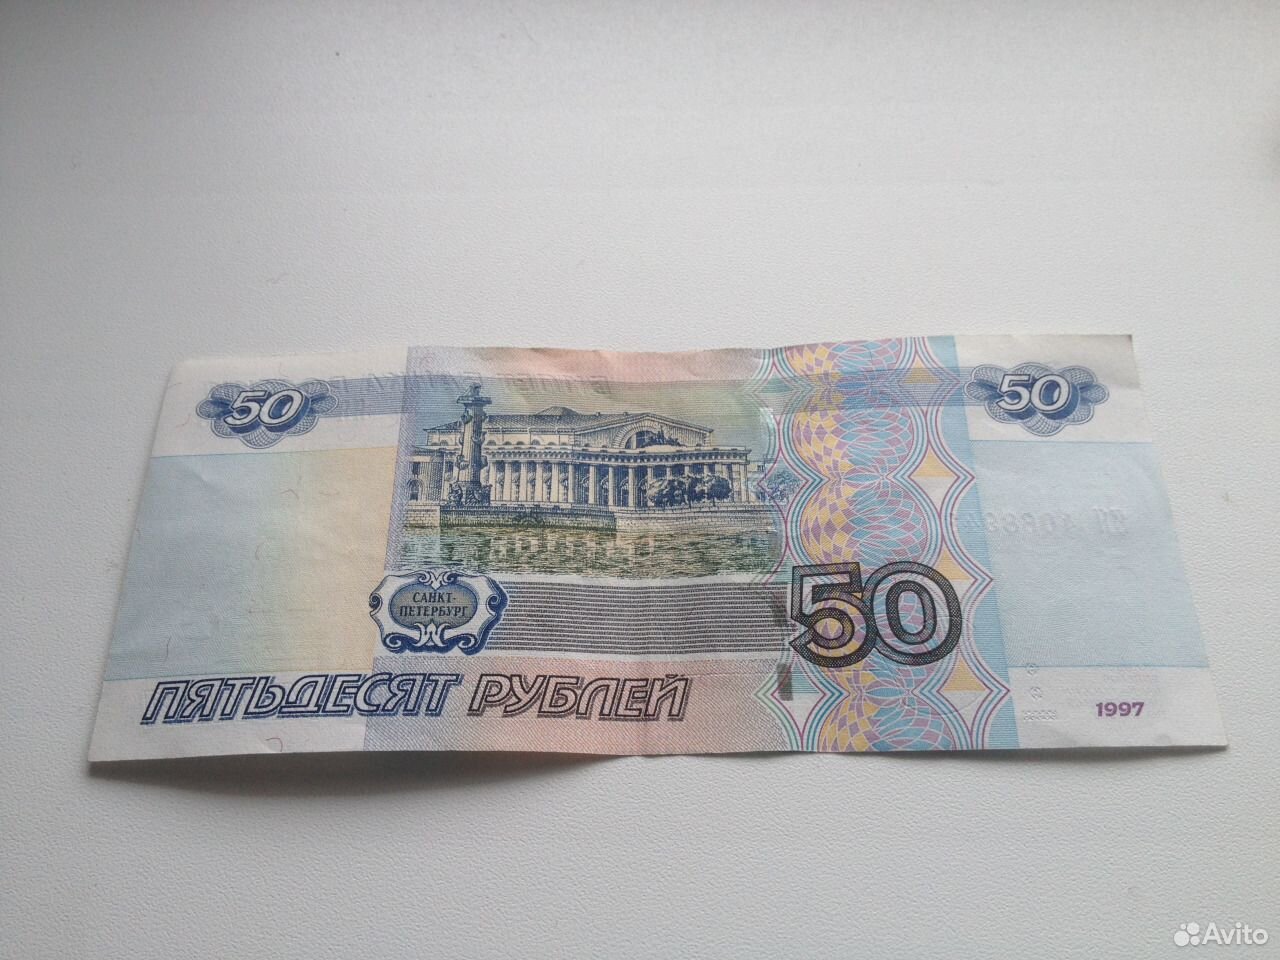 50 рублей скину. 50 Рублей. Купюра 50 рублей. Фотография 50 рублей. Пятьдесят рублей.